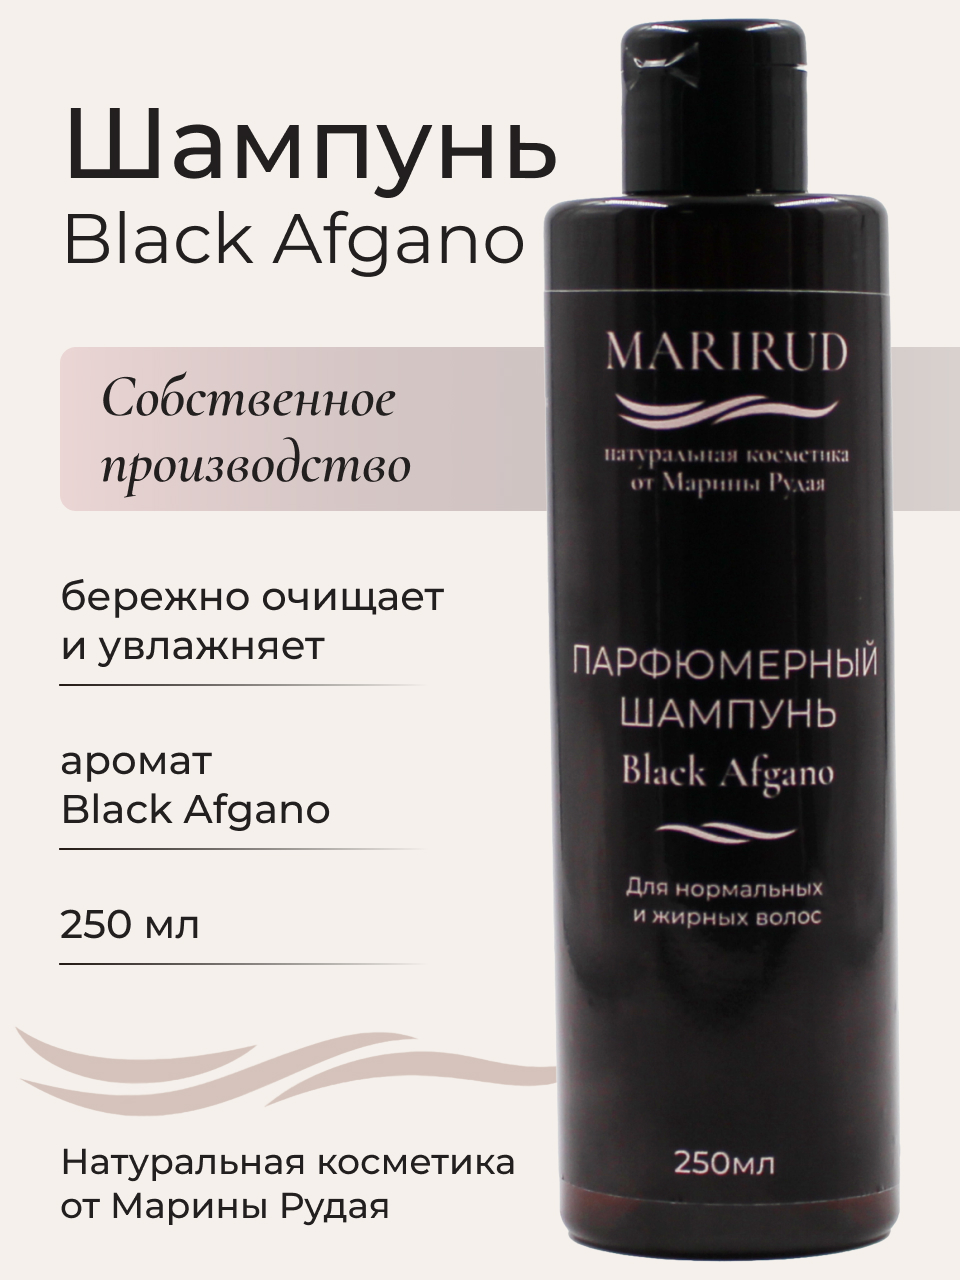 Набор парфюмерный- Шампуни Black Afgano и Tobacco Vanille шампунь eco branch против выпадения волос с экстрактом чёрного чеснока black garlic shampo